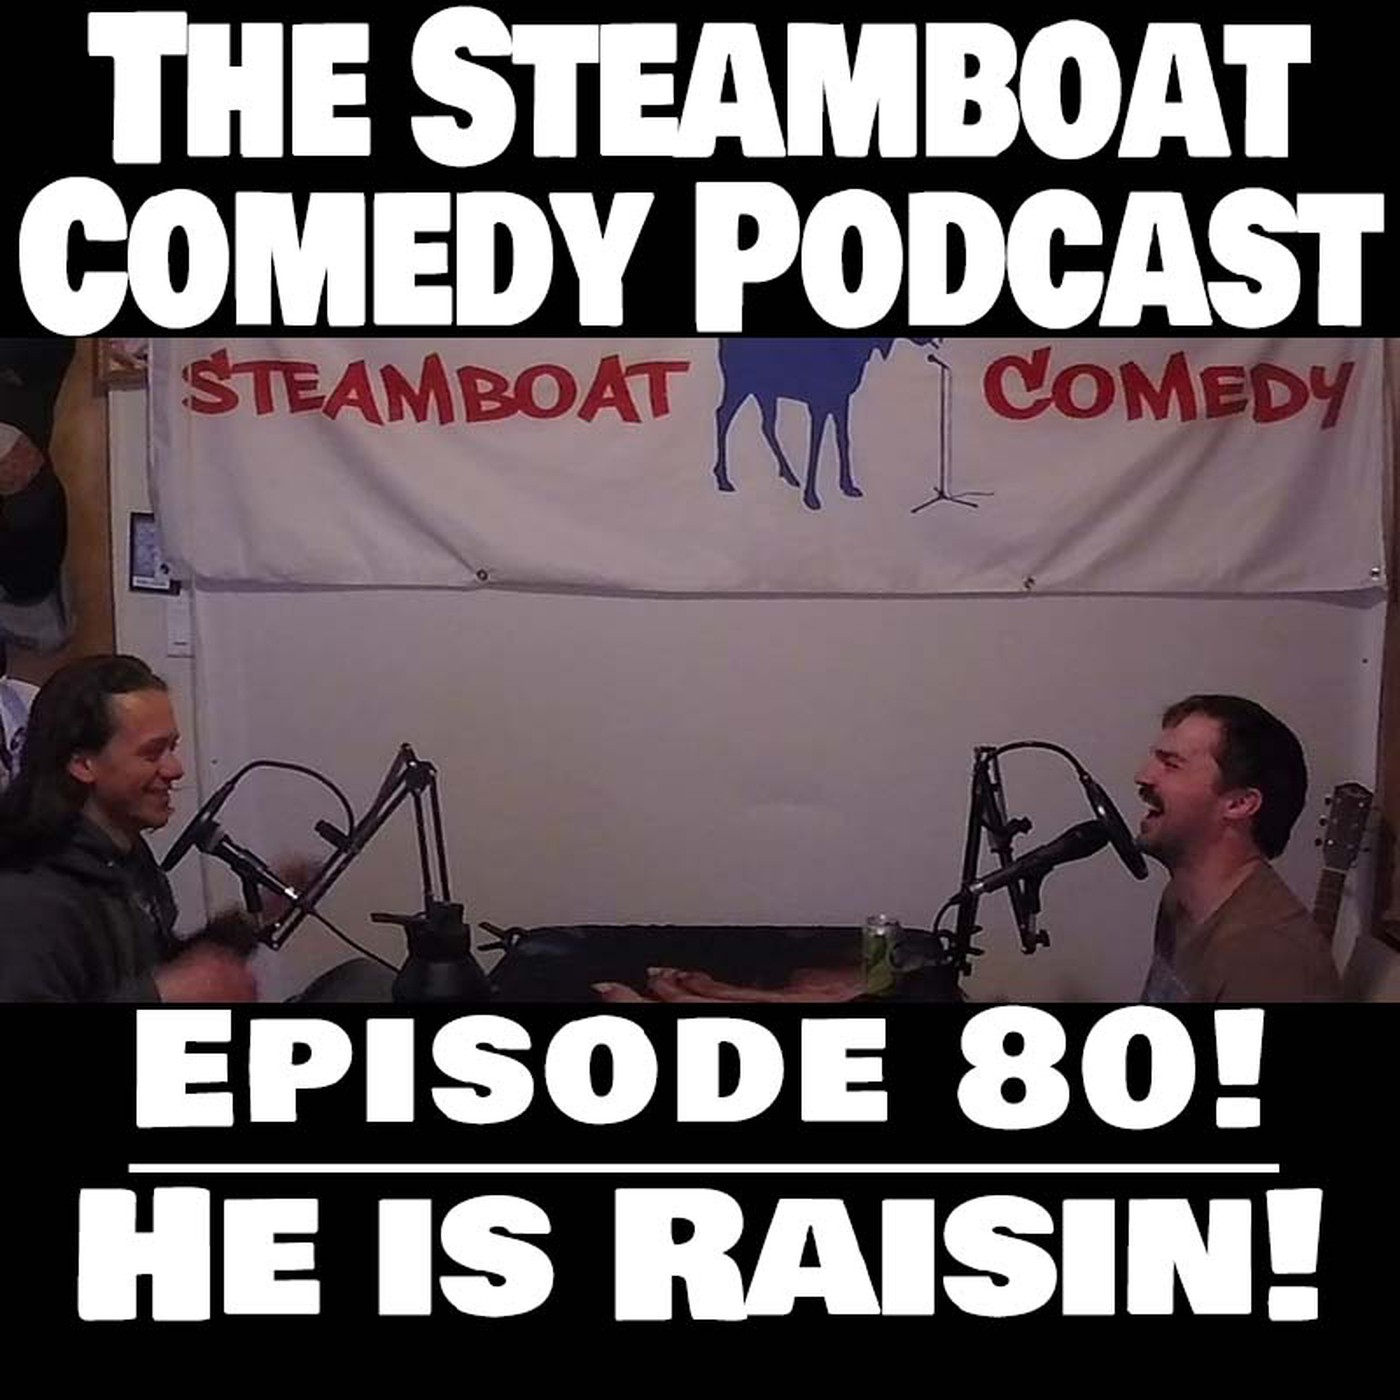 Episode 80! He is Raisin!